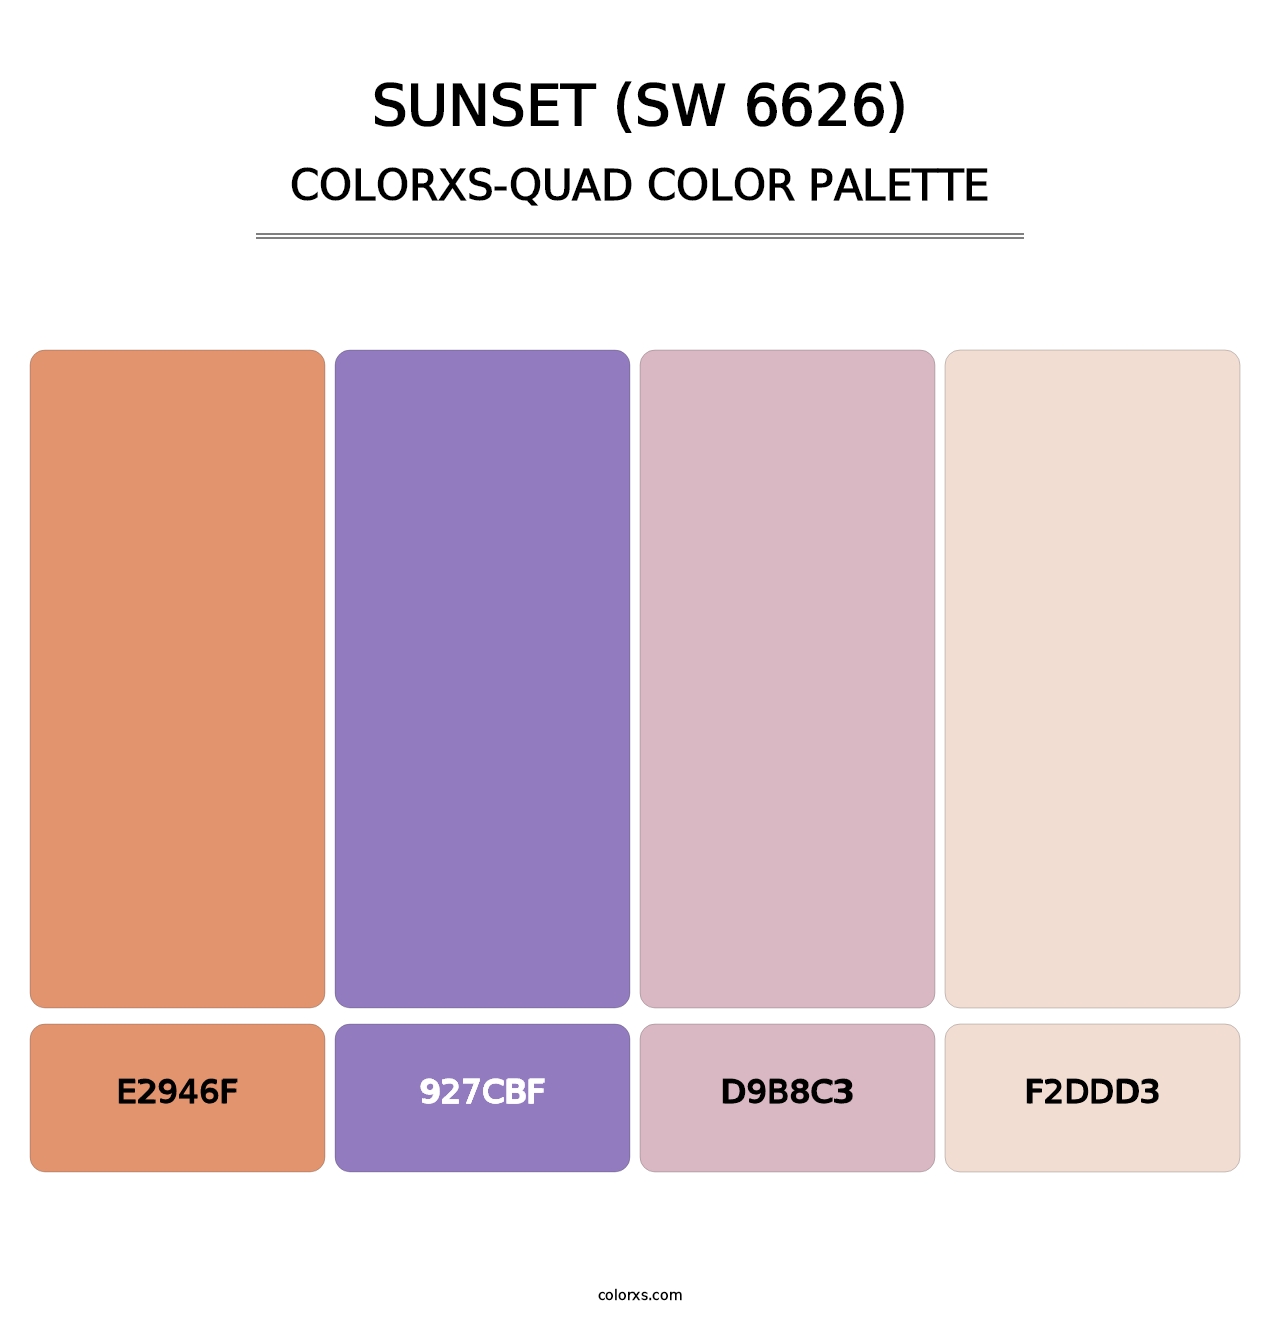 Sunset (SW 6626) - Colorxs Quad Palette